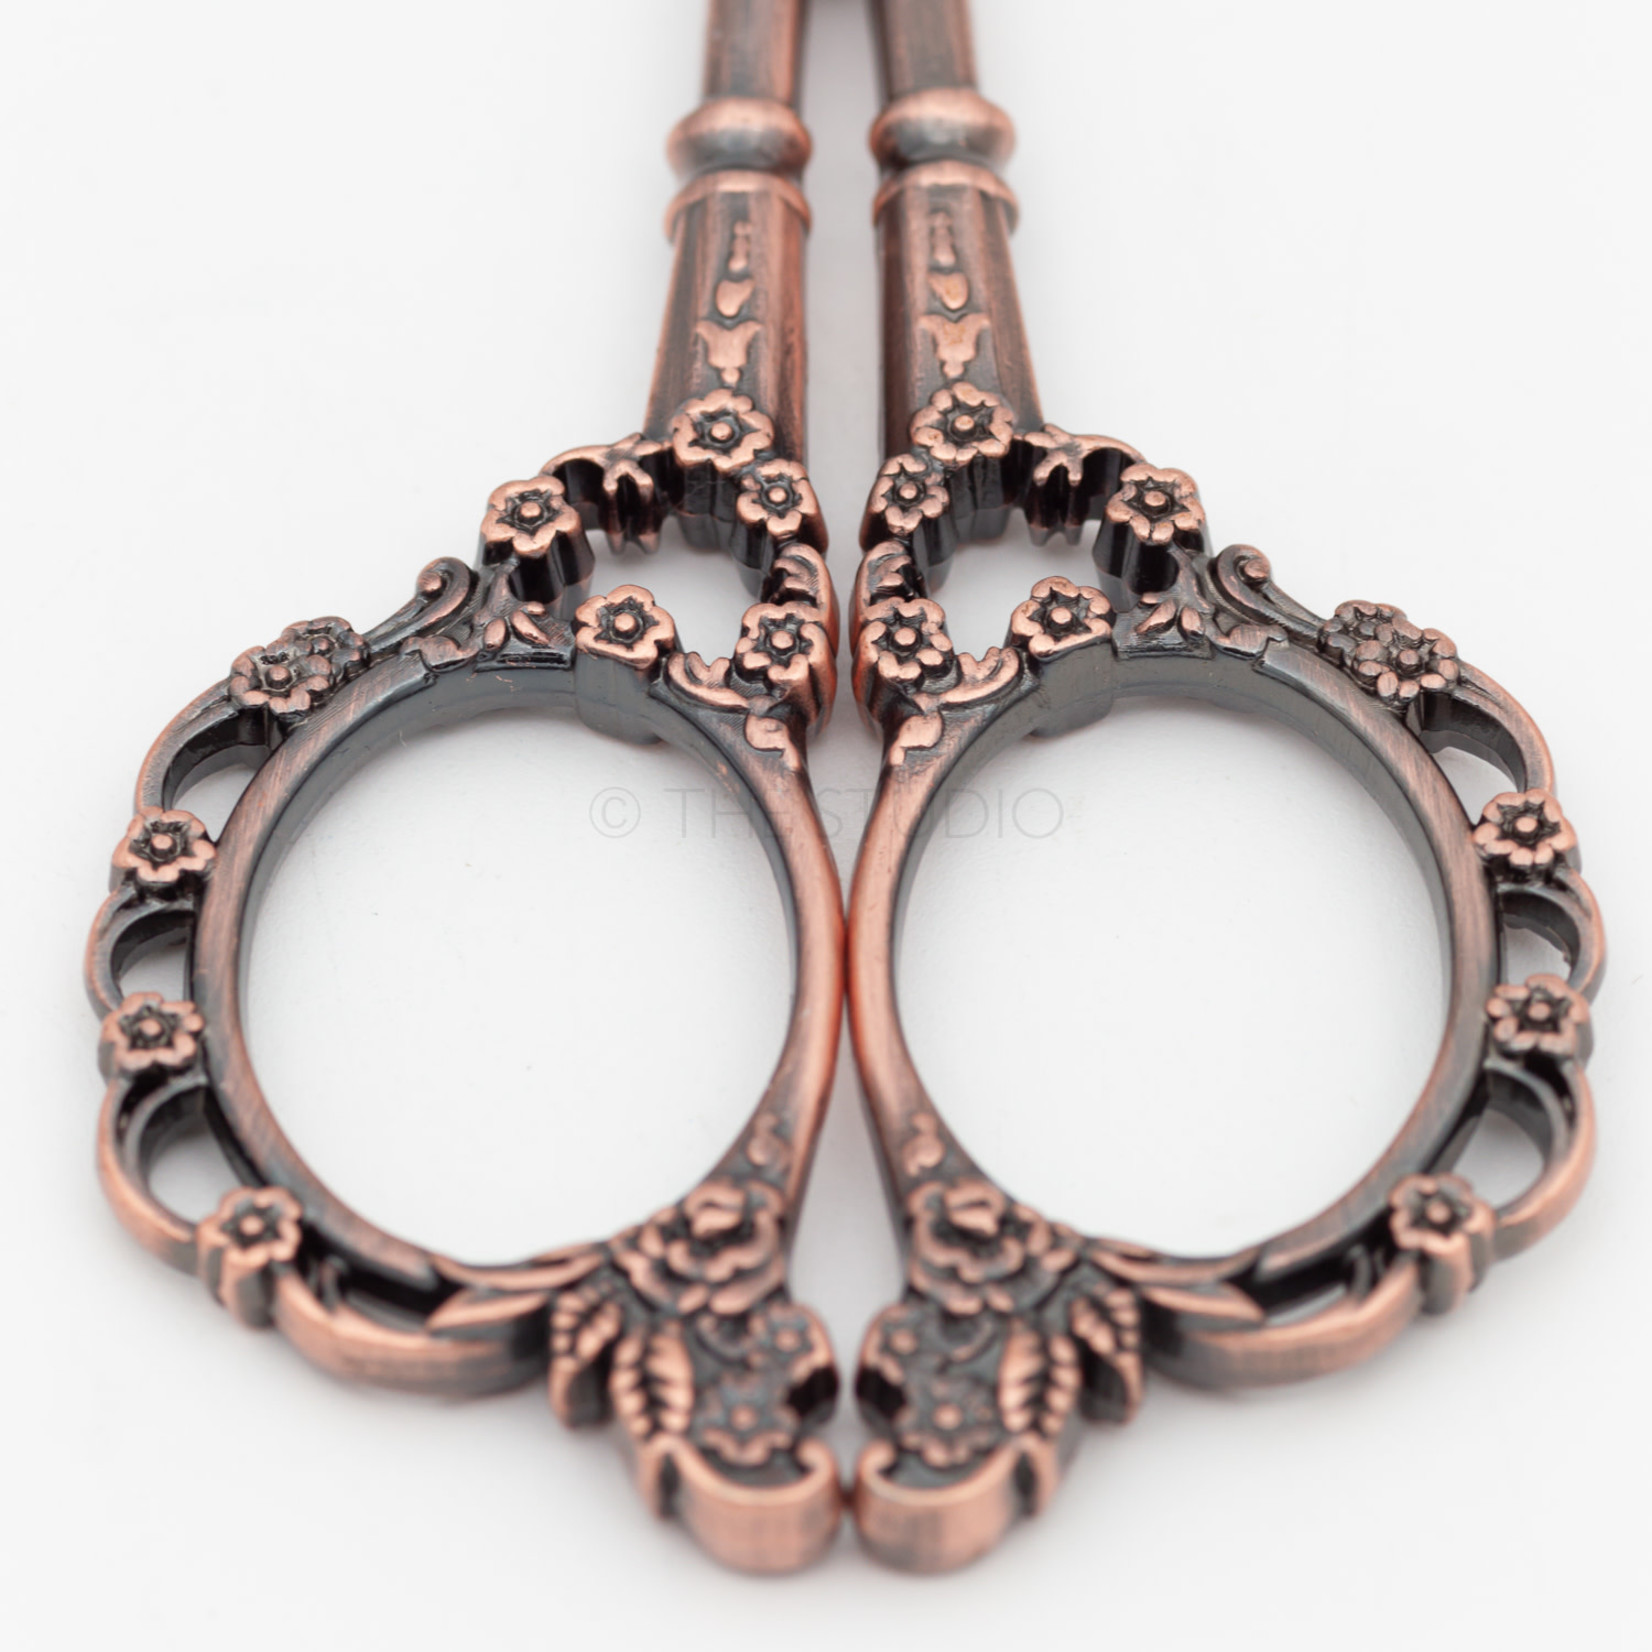 European Classical Scissors - Bronze